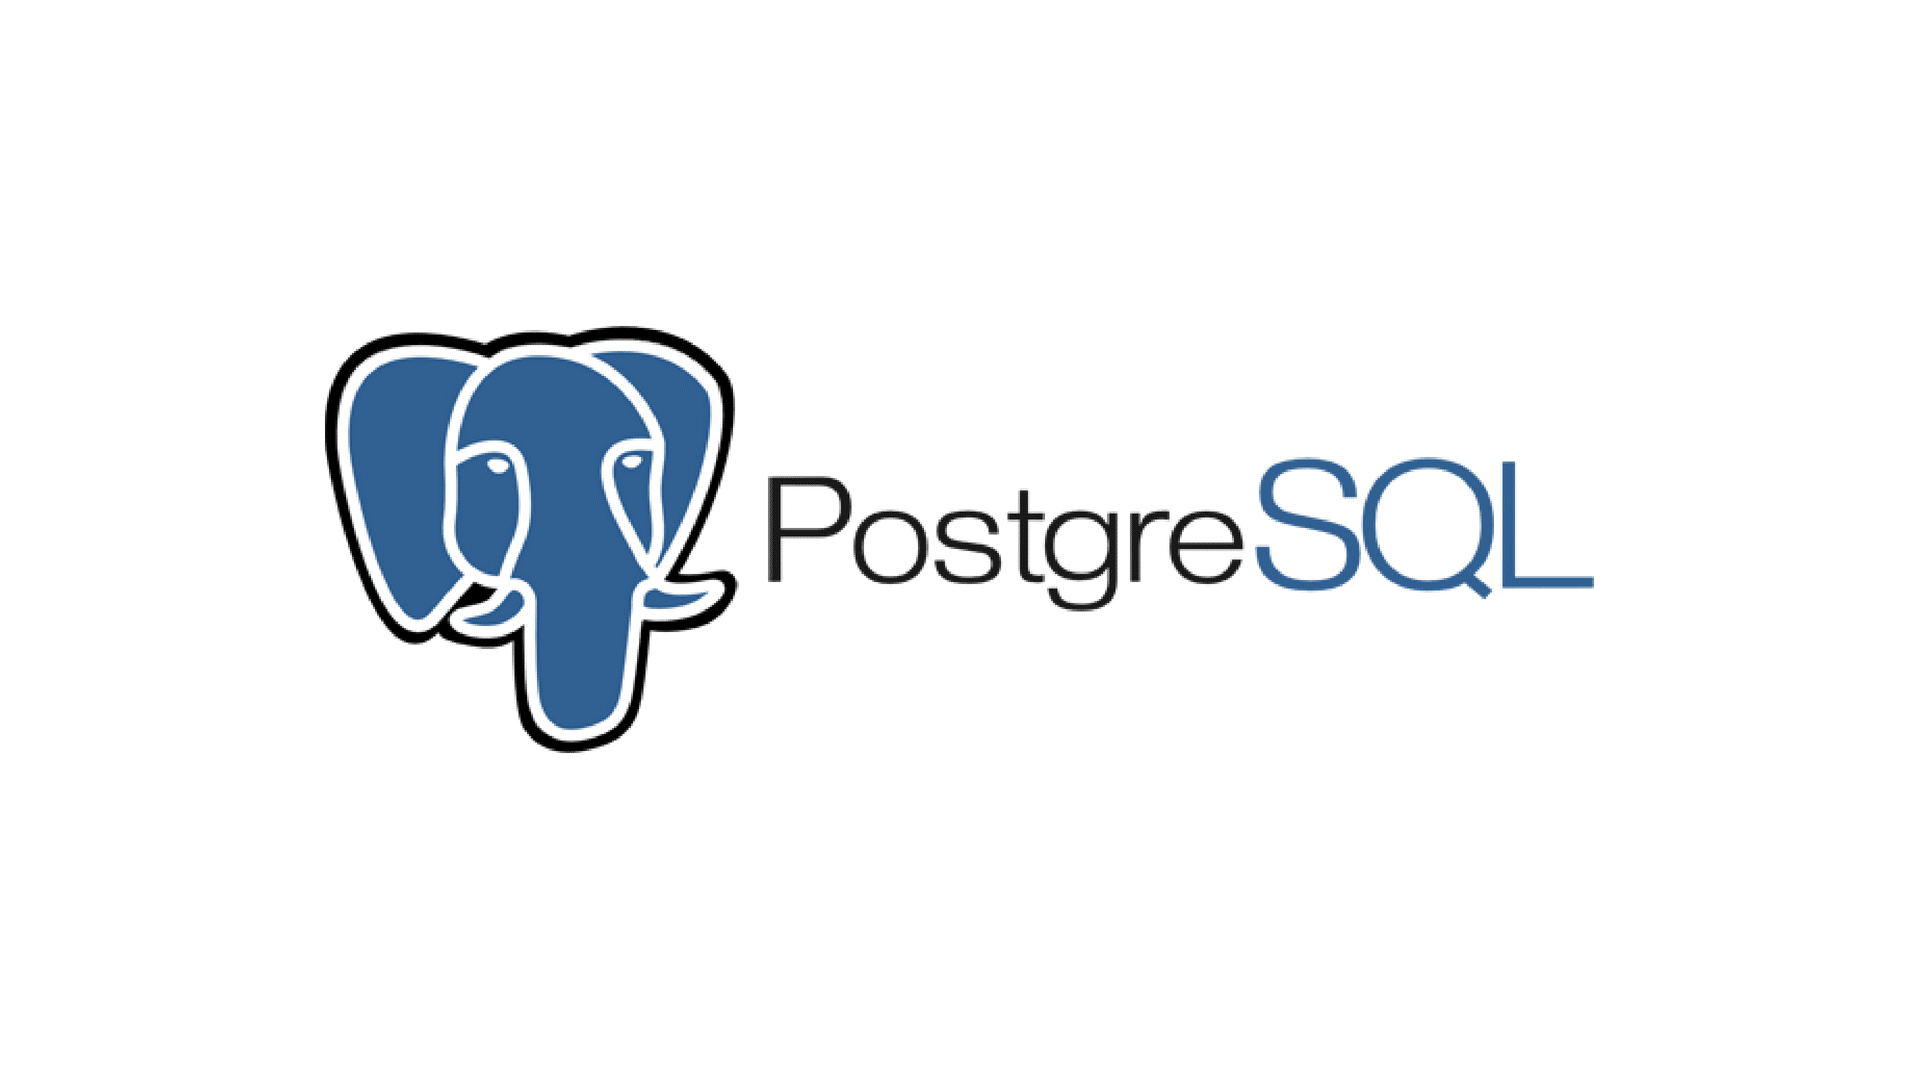 Het PostgreSQL logo, met de tekst onder een gestileerde blauwe olifantenkop omlijnd in zwart-wit.